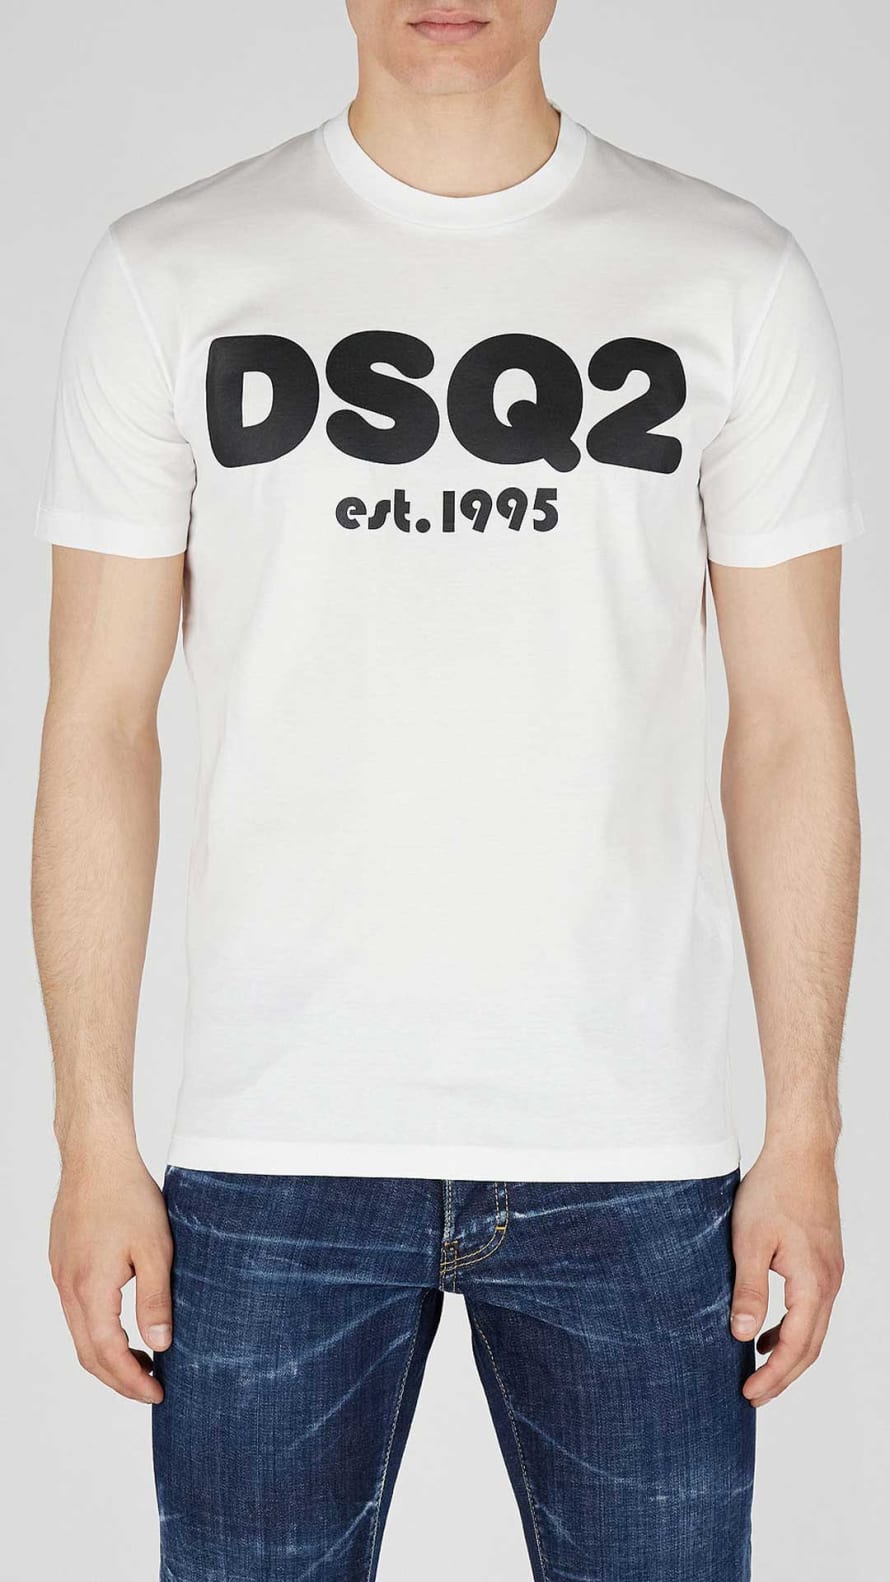 Dsquared2 Camiseta Dsquared2 Con Estampación Dsq2 Est.1995 – M, Blanco